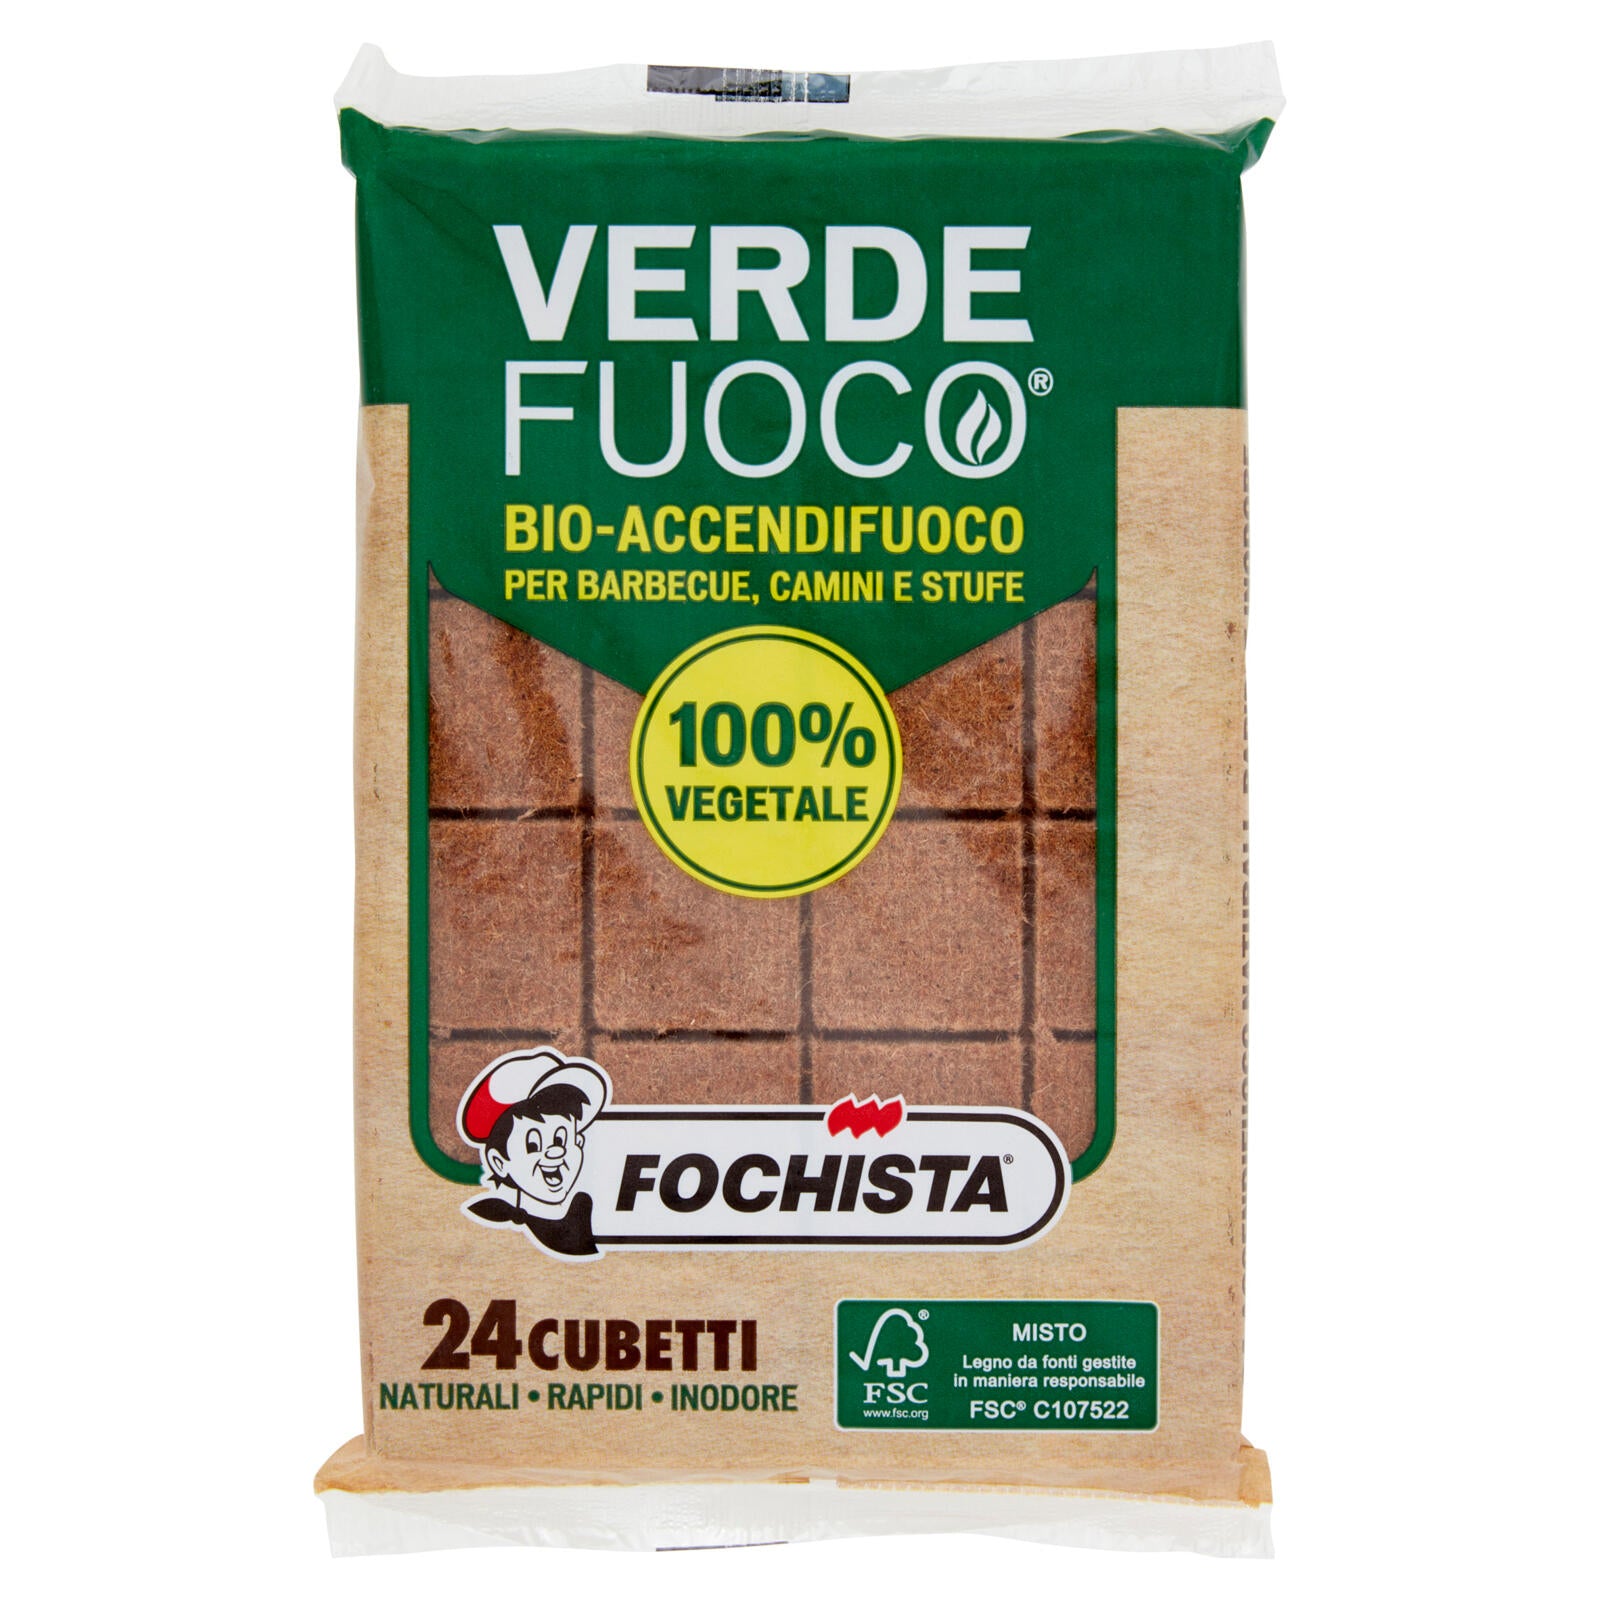 Fochista Verdefuoco Bio-Accendifuoco per Barbecue, Camini e Stufe 24 pz